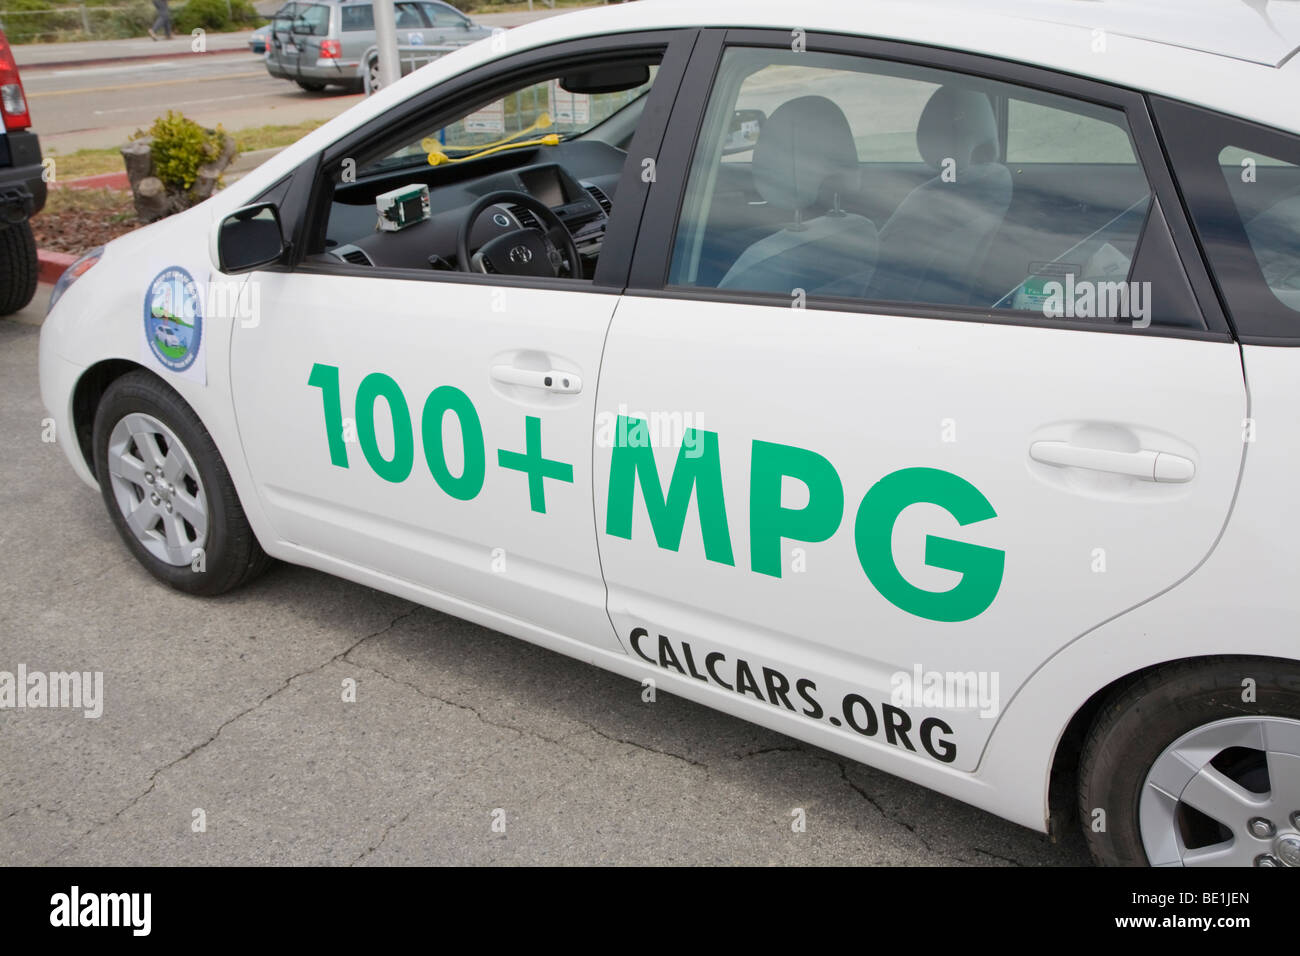 Vista laterale di un ibrido plug-in la Toyota Prius auto con adesivi promozione 100+ miglia per gallone (mpg) e CalCars.Org. Foto Stock